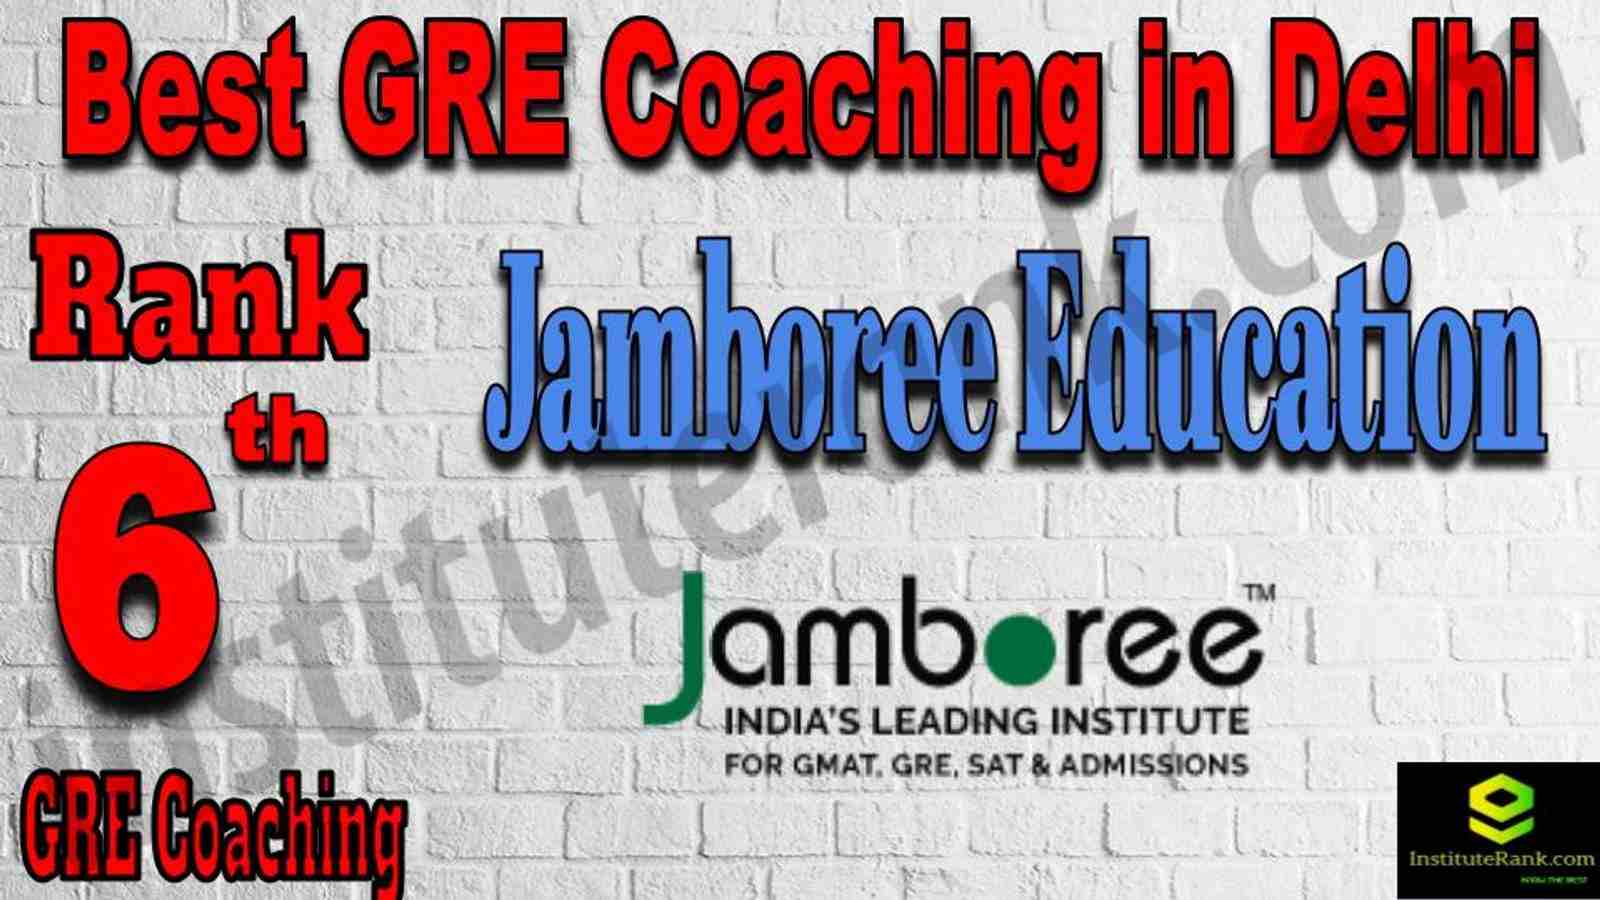 Rank 6 Best GRE Coaching in Delhi